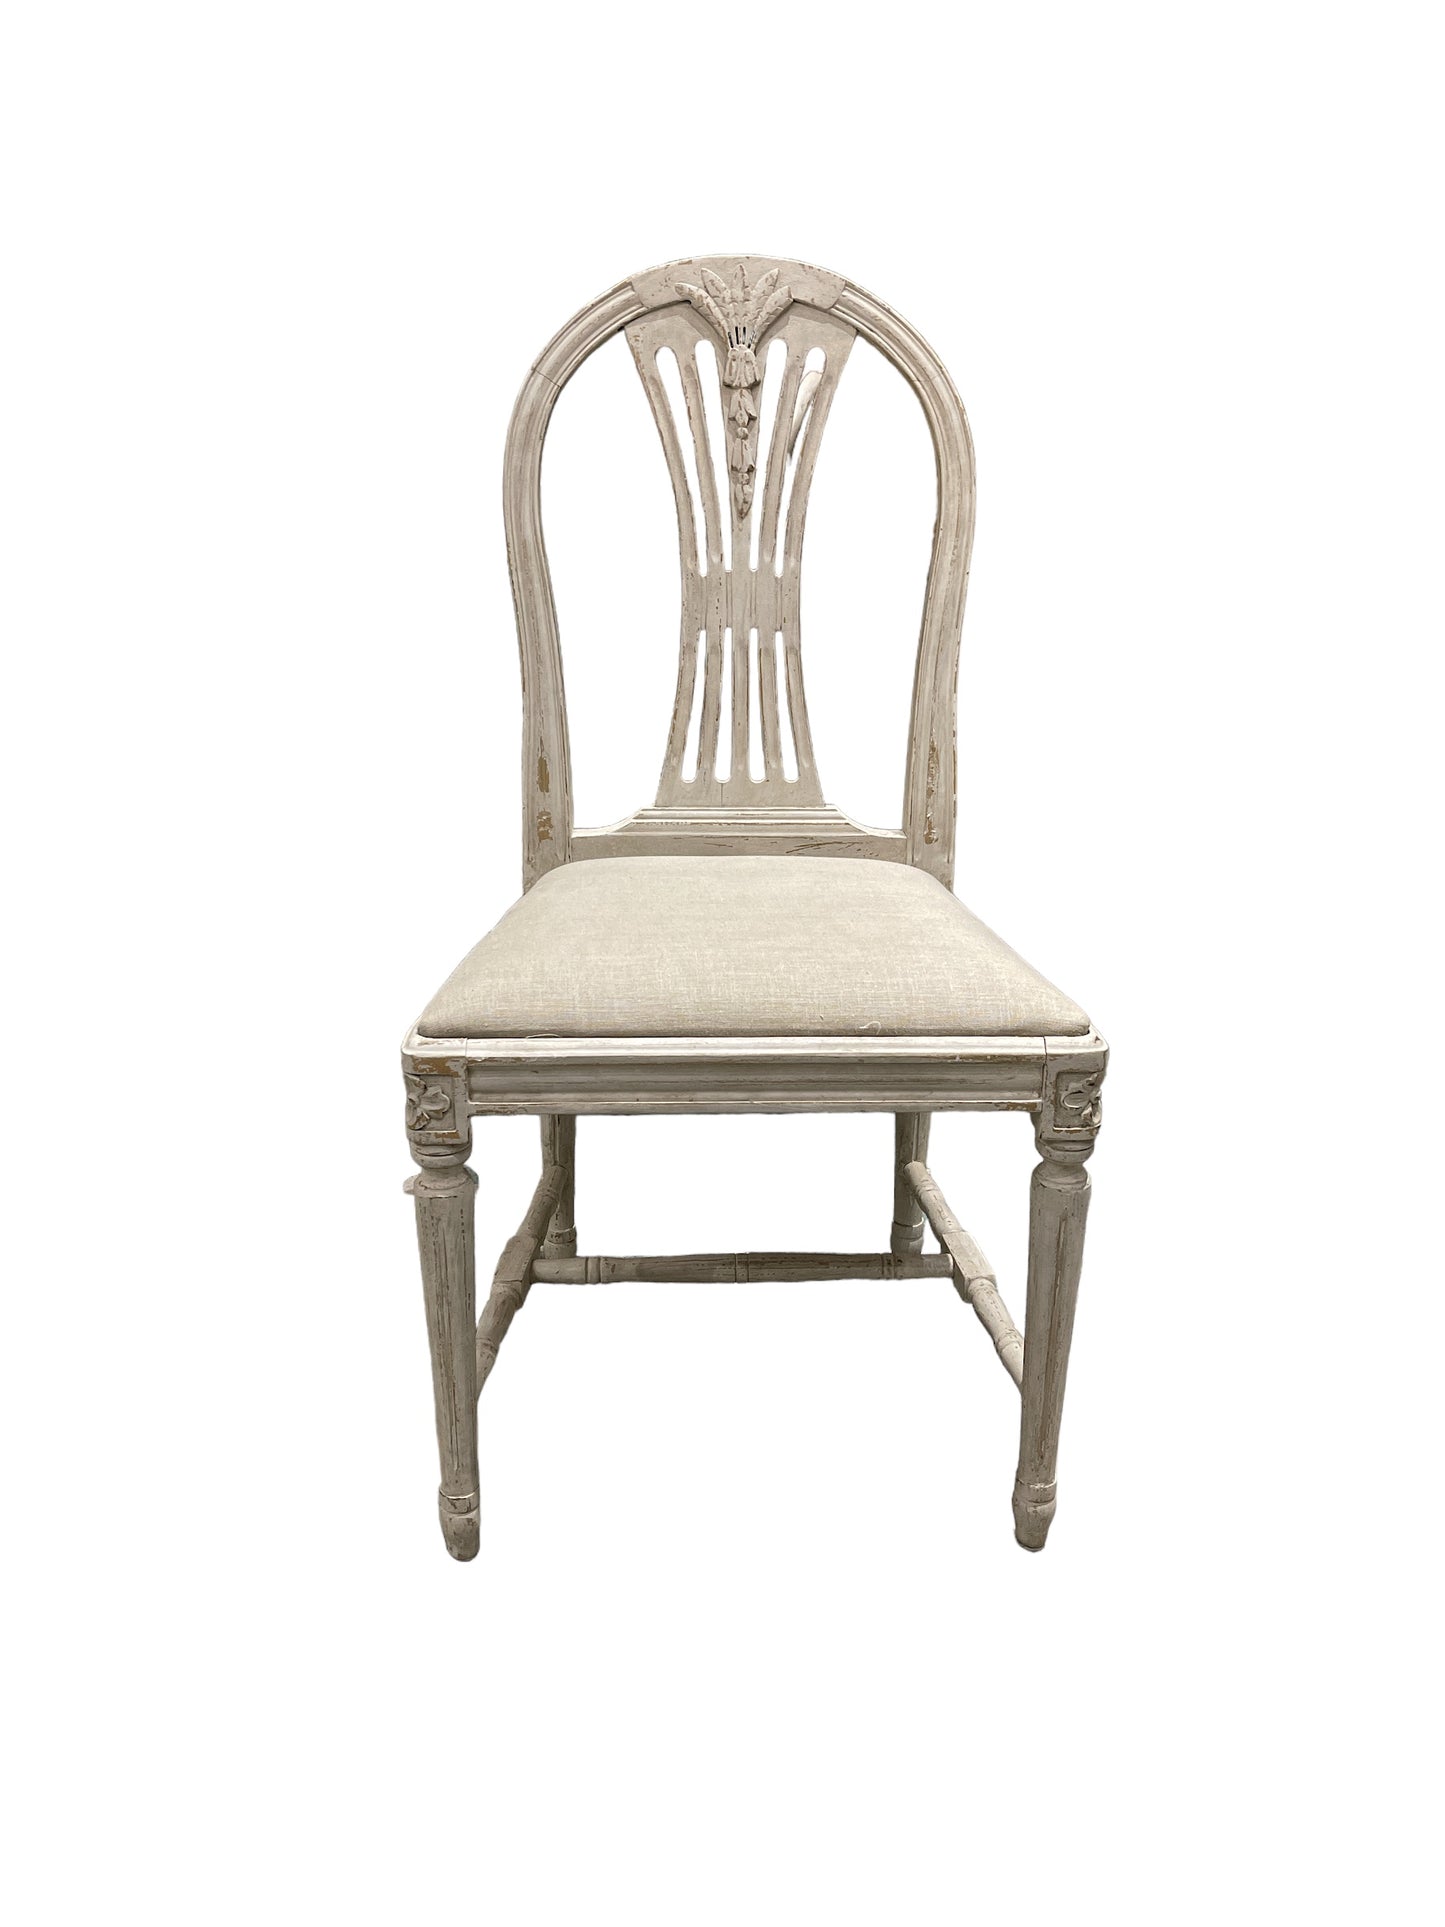 Swedish Dining Chair Circa 1880